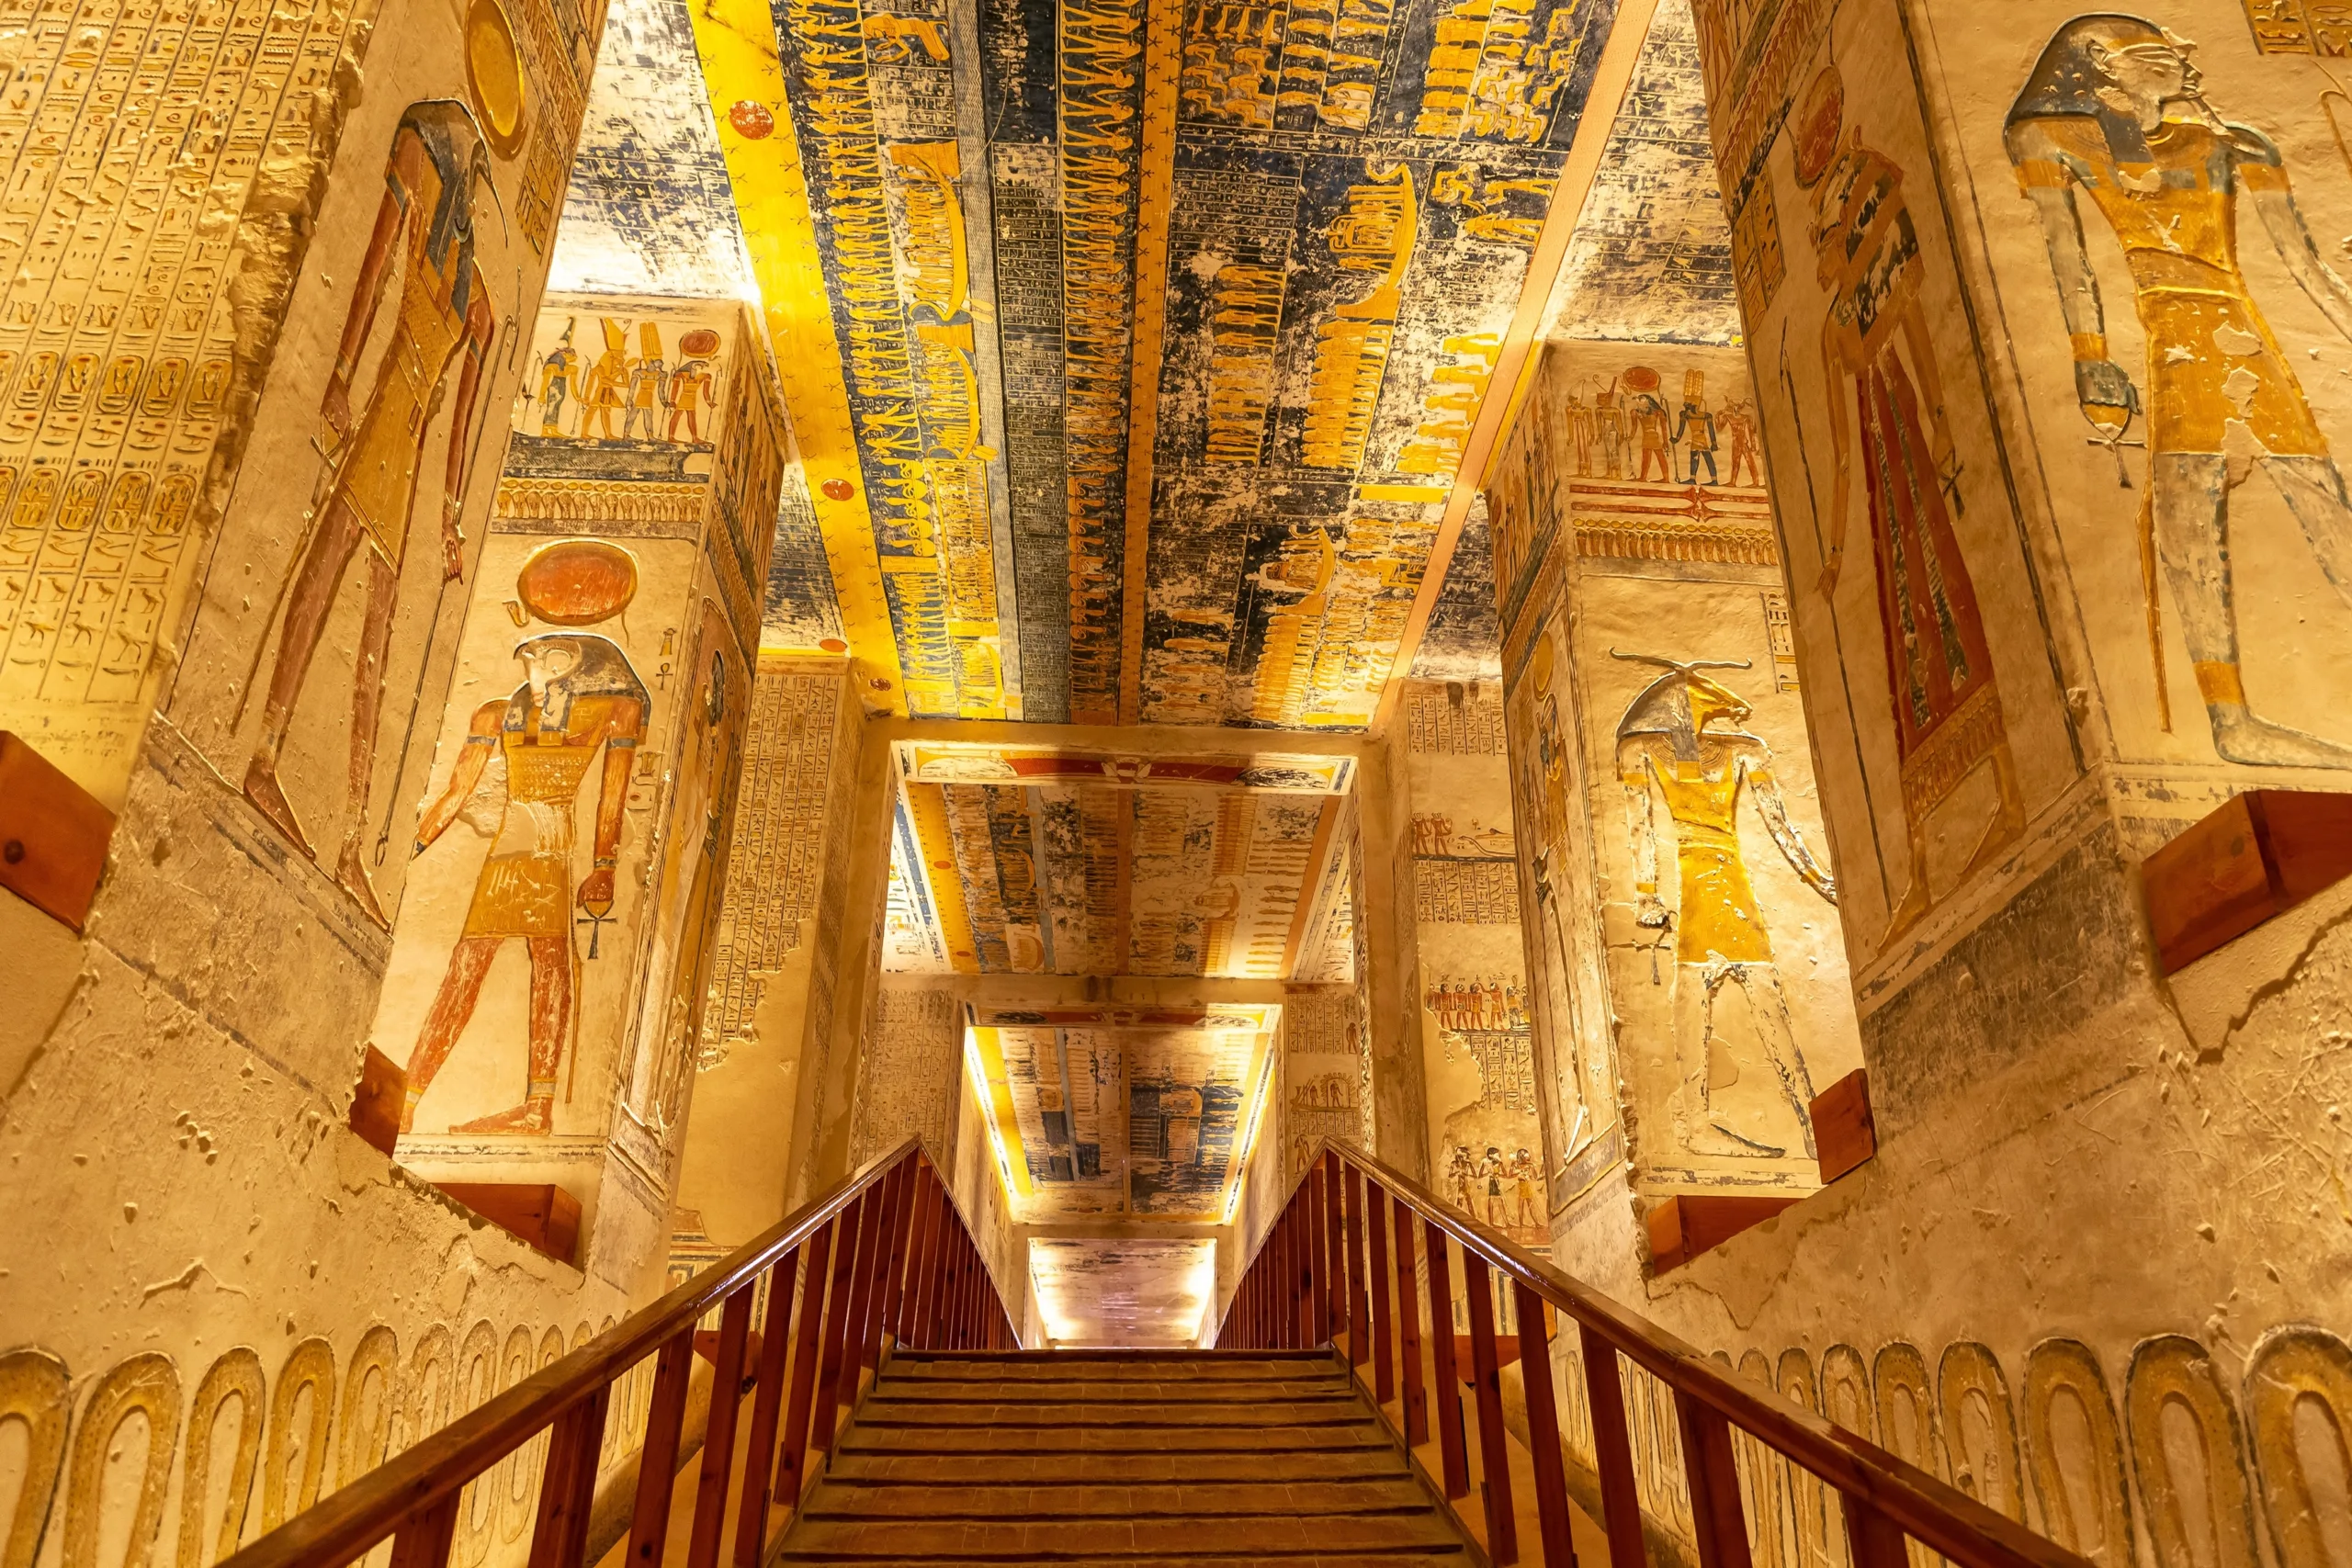 pyramids of egypt tour